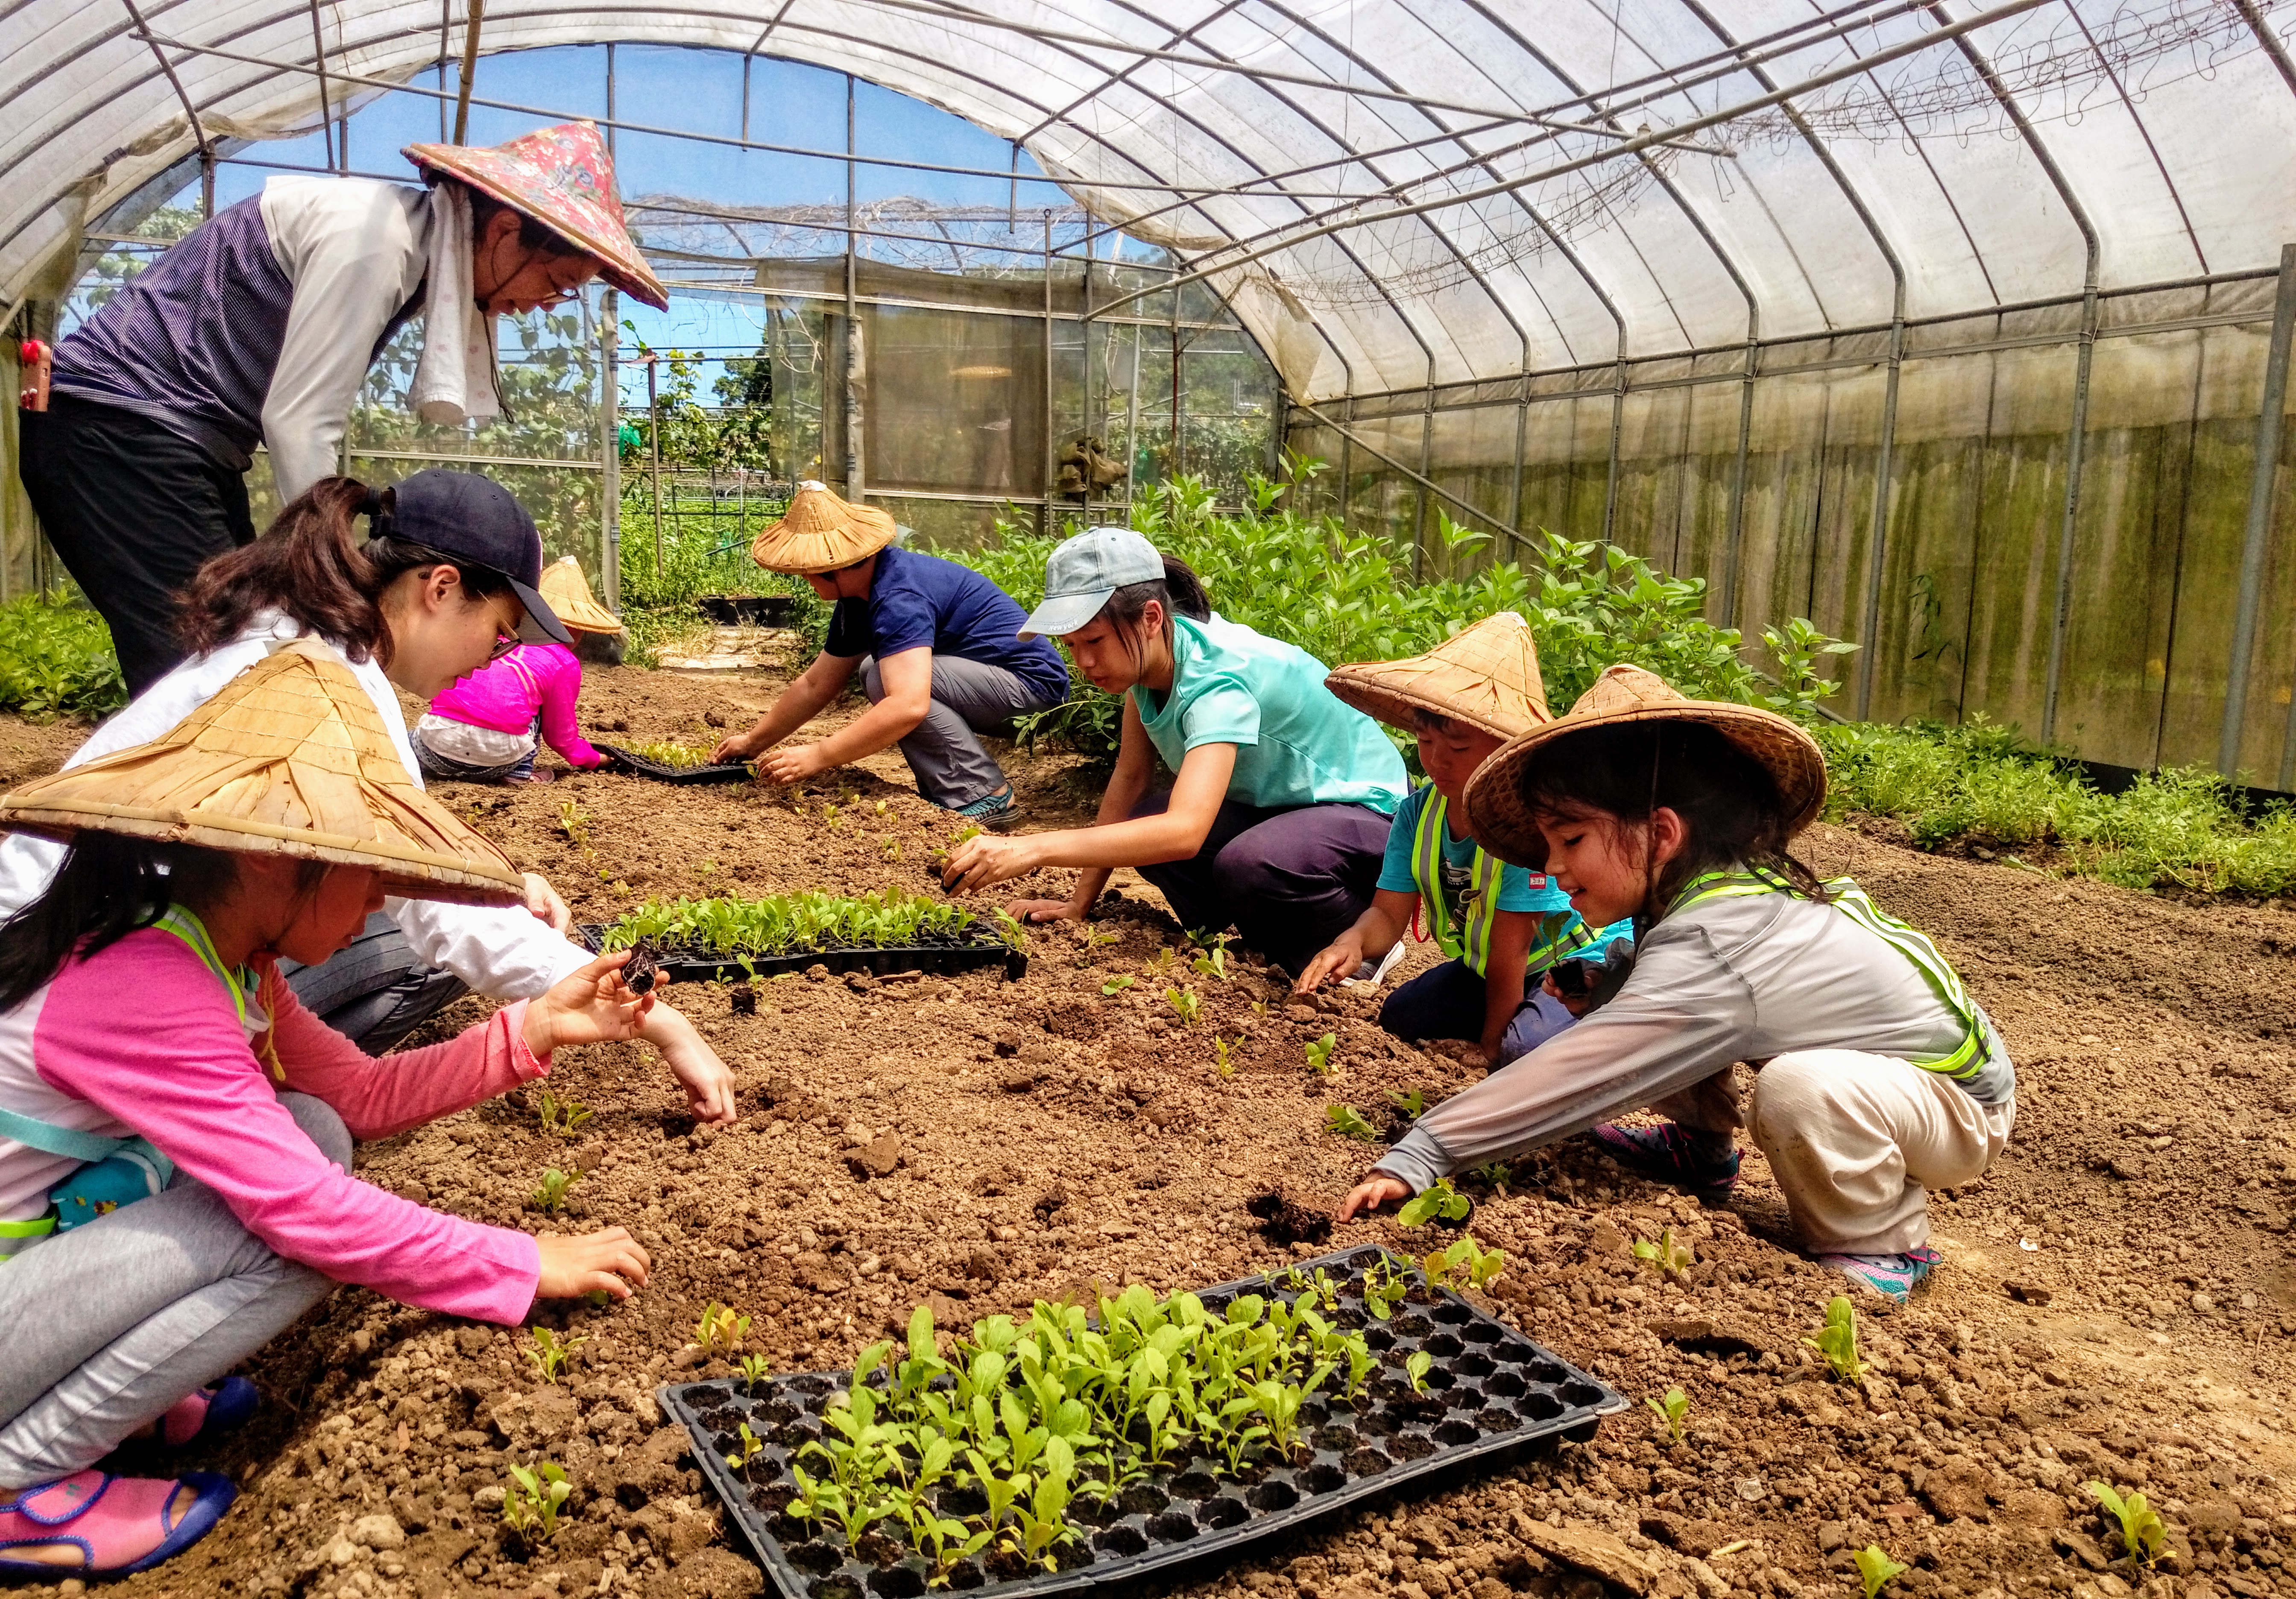 建 蓁 環 境 教 育 基 金 會 致 力 於 環 境 永 續 教 育 ， 舉 辦 親 子 體 驗 農 作 課 程 